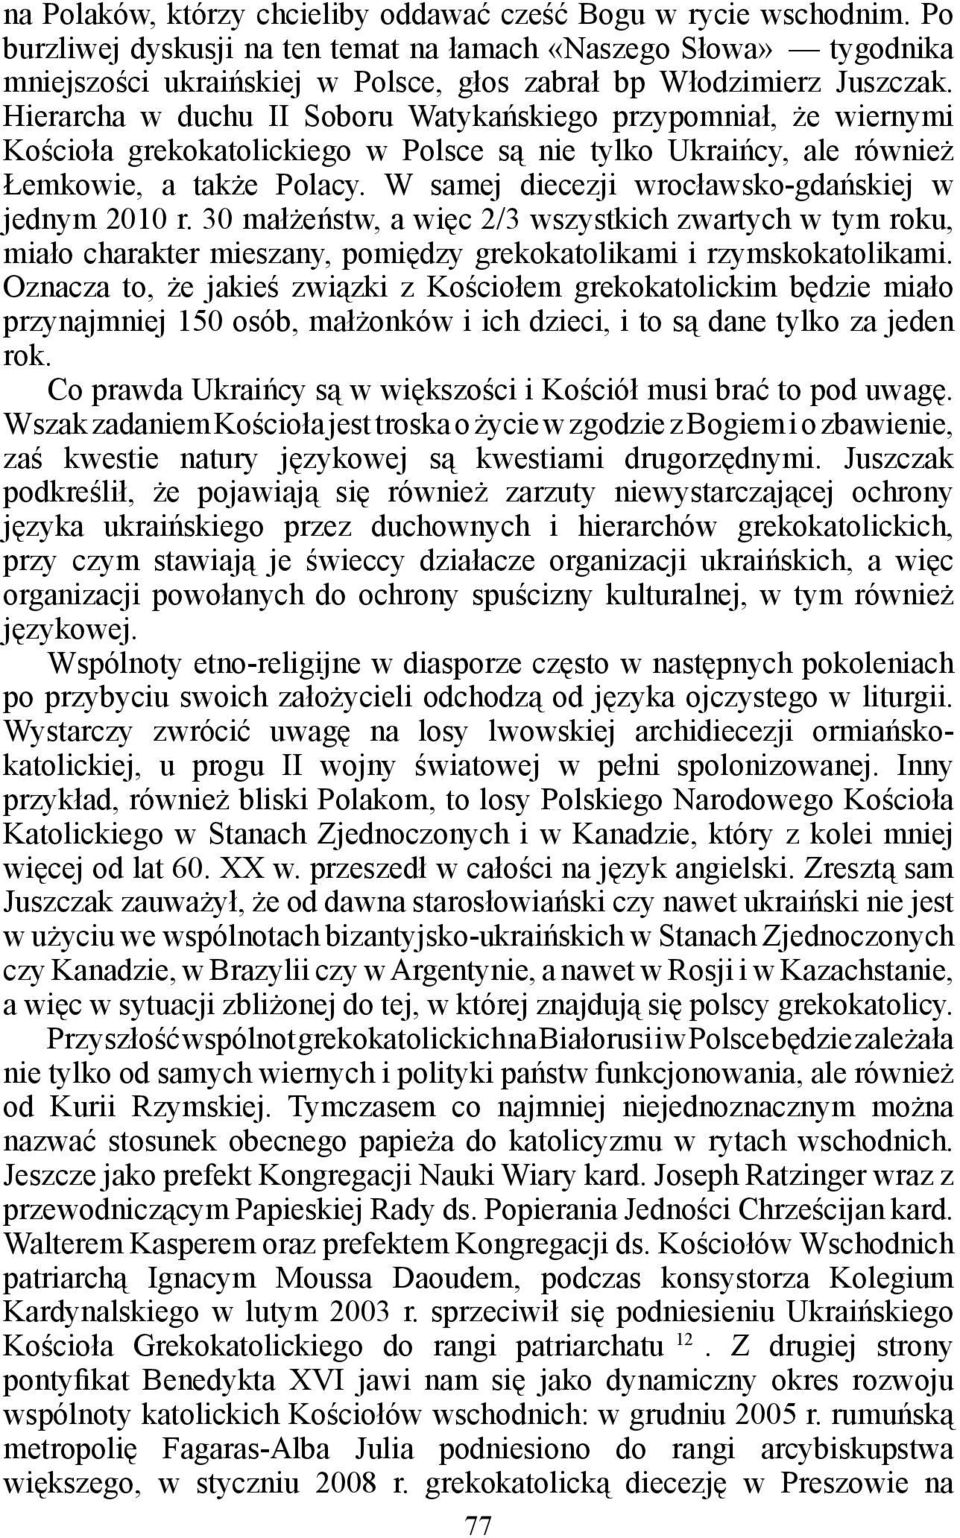 Hierarcha w duchu II Soboru Watykańskiego przypomniał, że wiernymi Kościoła grekokatolickiego w Polsce są nie tylko Ukraińcy, ale również Łemkowie, a także Polacy.